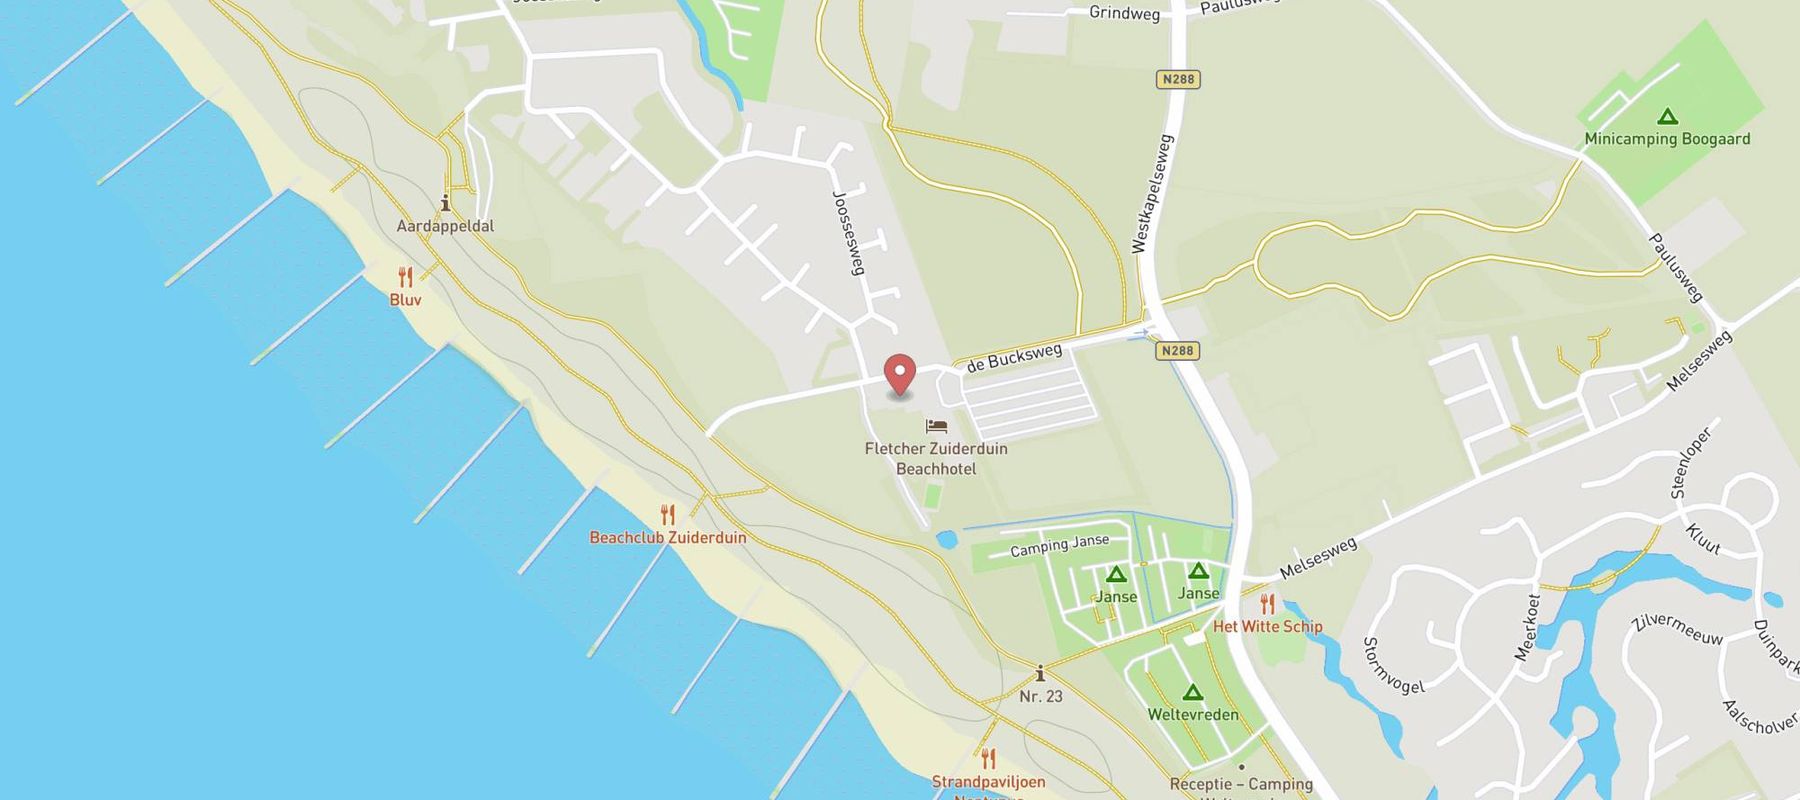 Fletcher Zuiderduin Beachhotel map